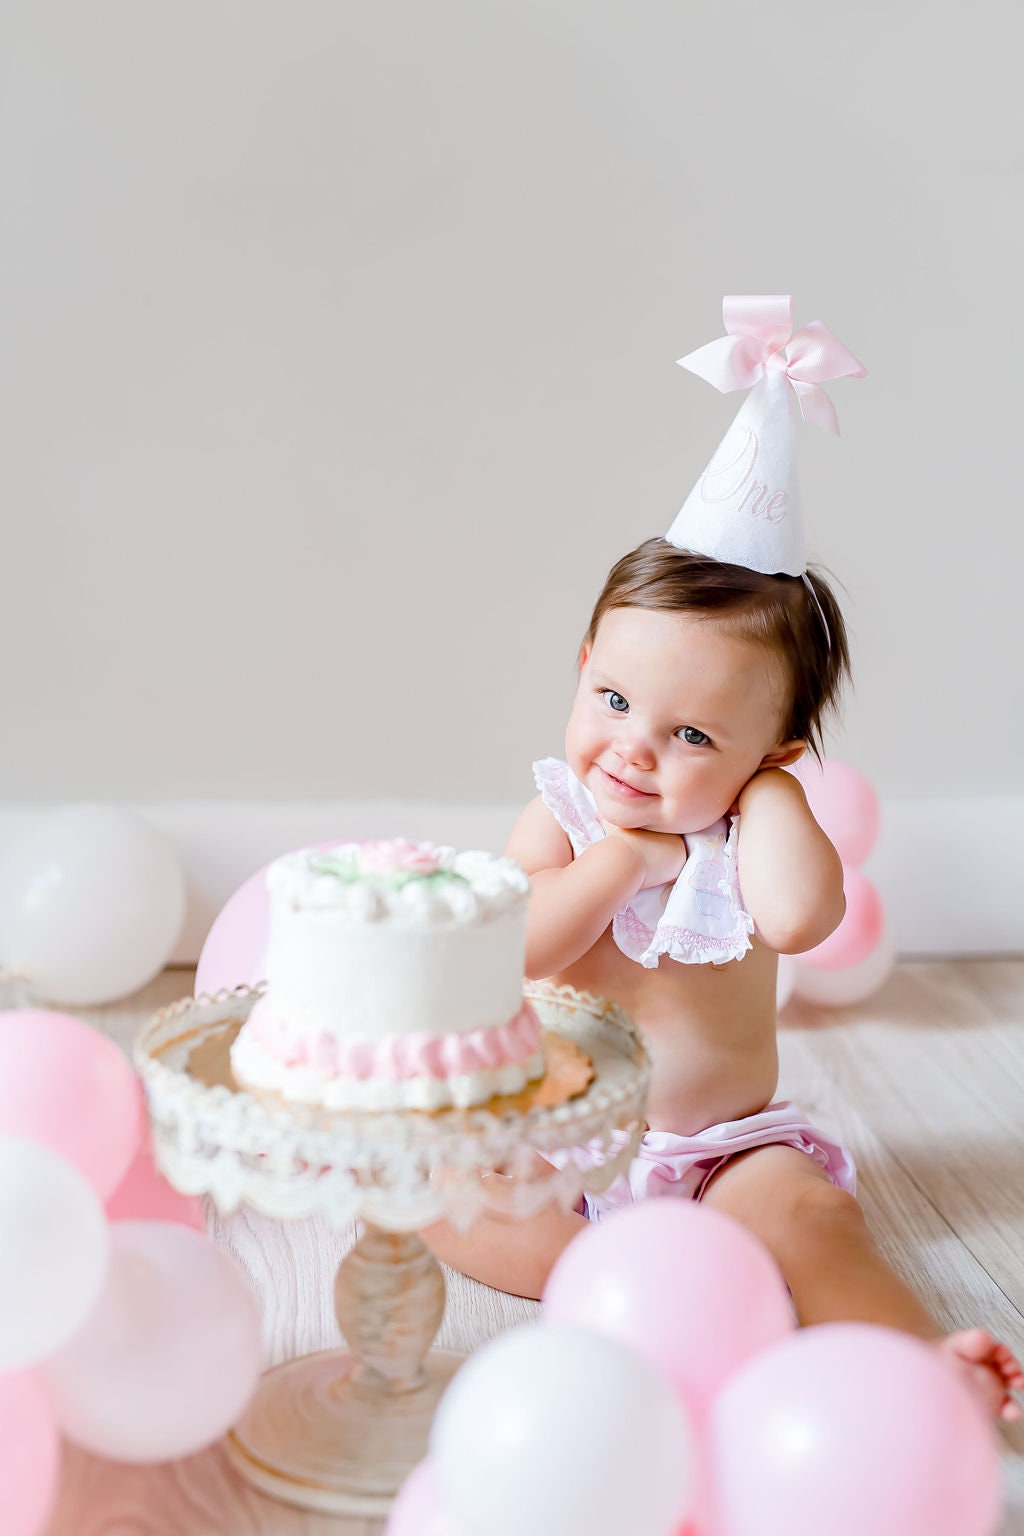 Blush One Keepsake Birthday Party Hat I Pink White One Party Hat I Baby Girl 1st Birthday Party Hat I Cake Smash Hat I Pink Birthday Hat